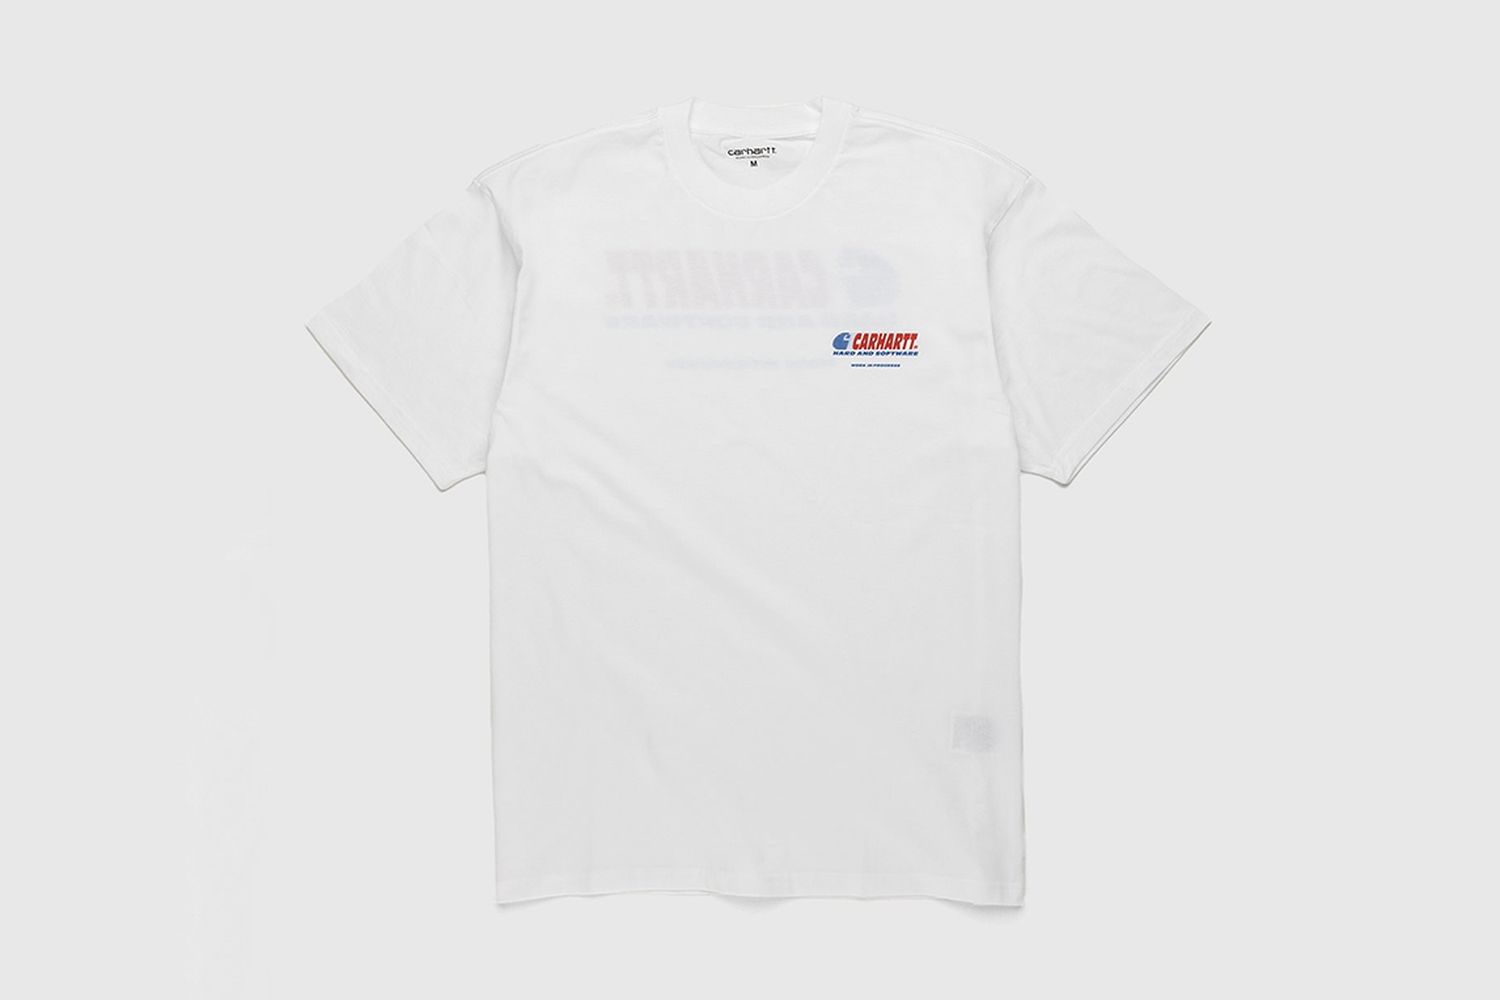 Software T-Shirt